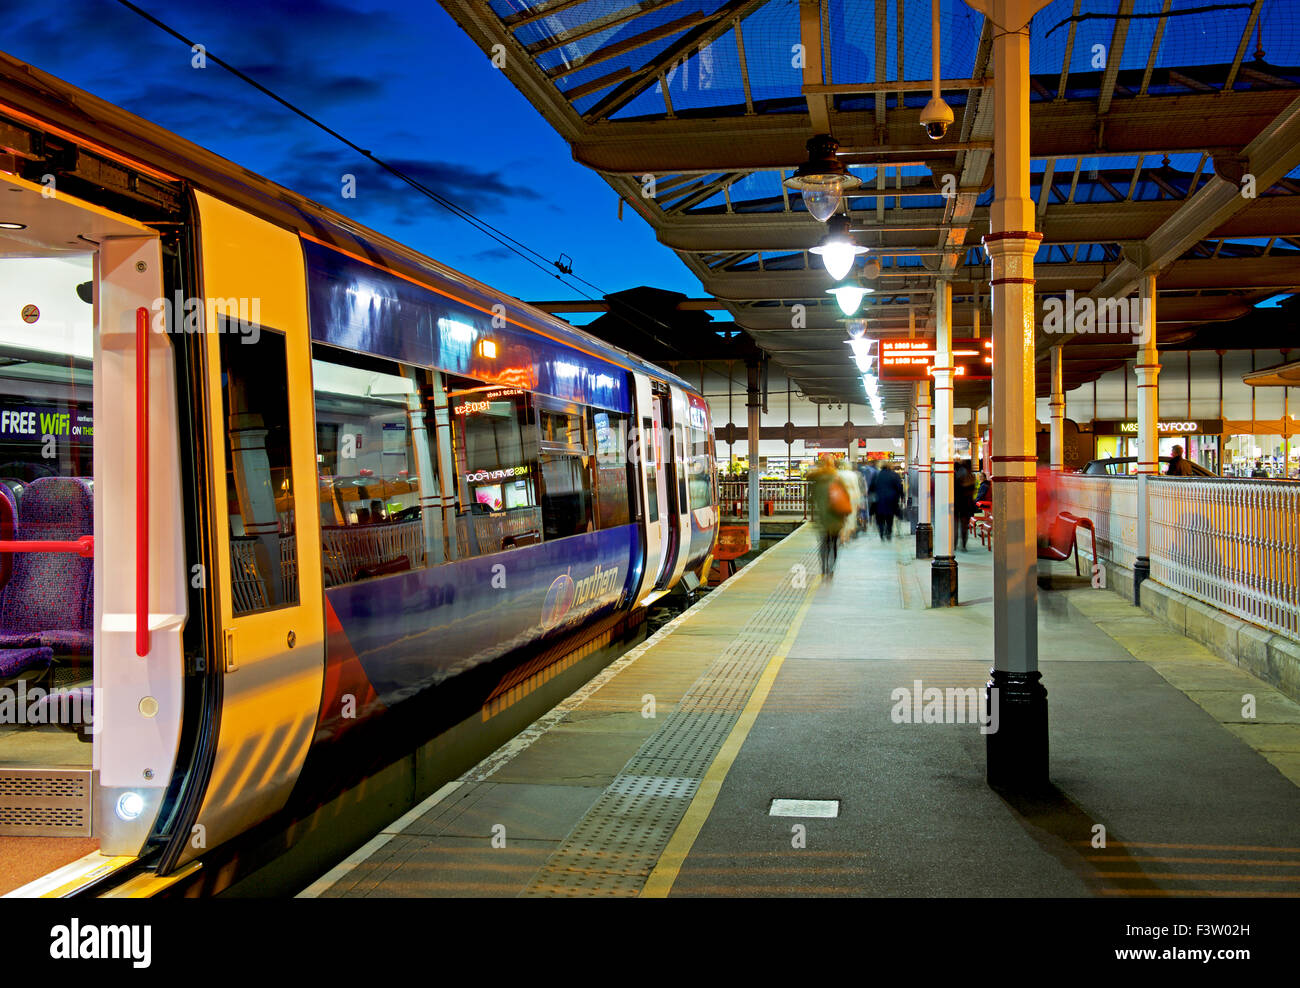 Stazione ferroviaria di notte, Ilkley, West Yorkshire, Inghilterra, Regno Unito Foto Stock